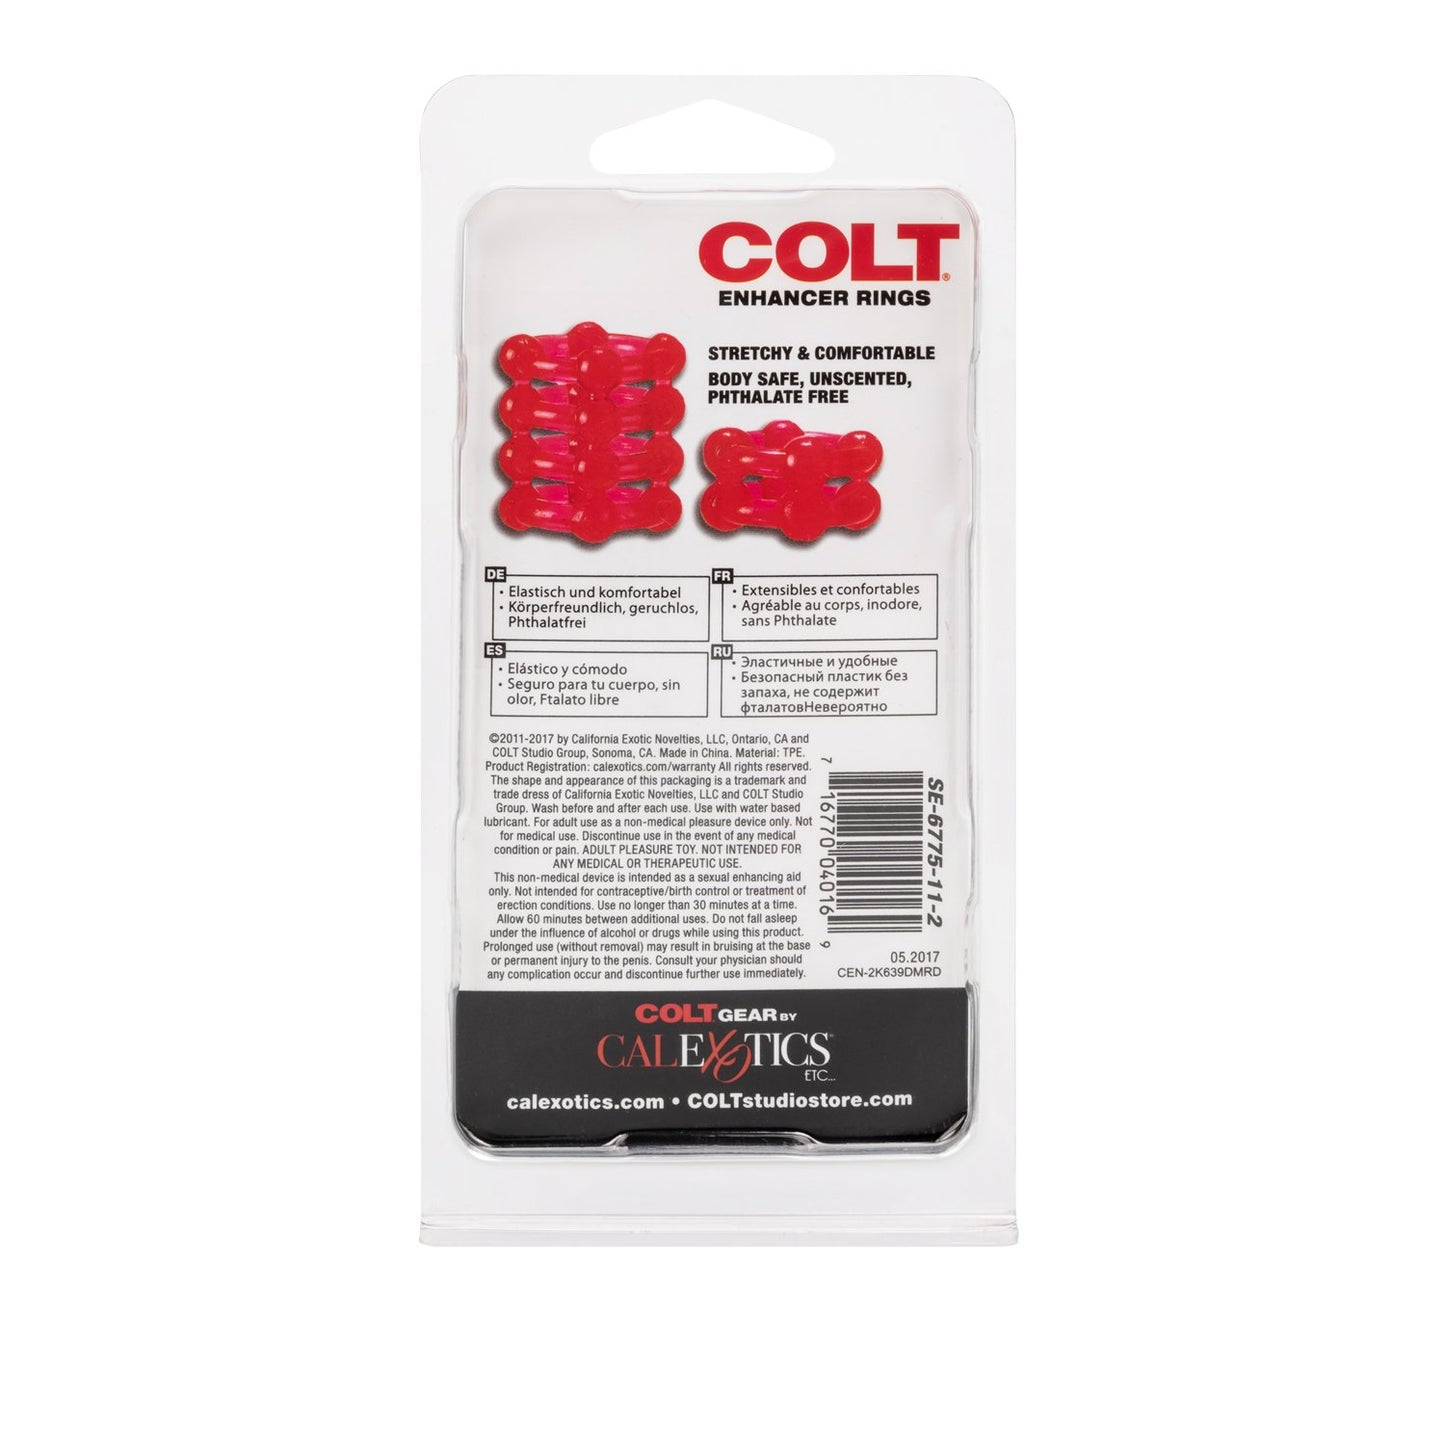 COLT Enhancer Rings